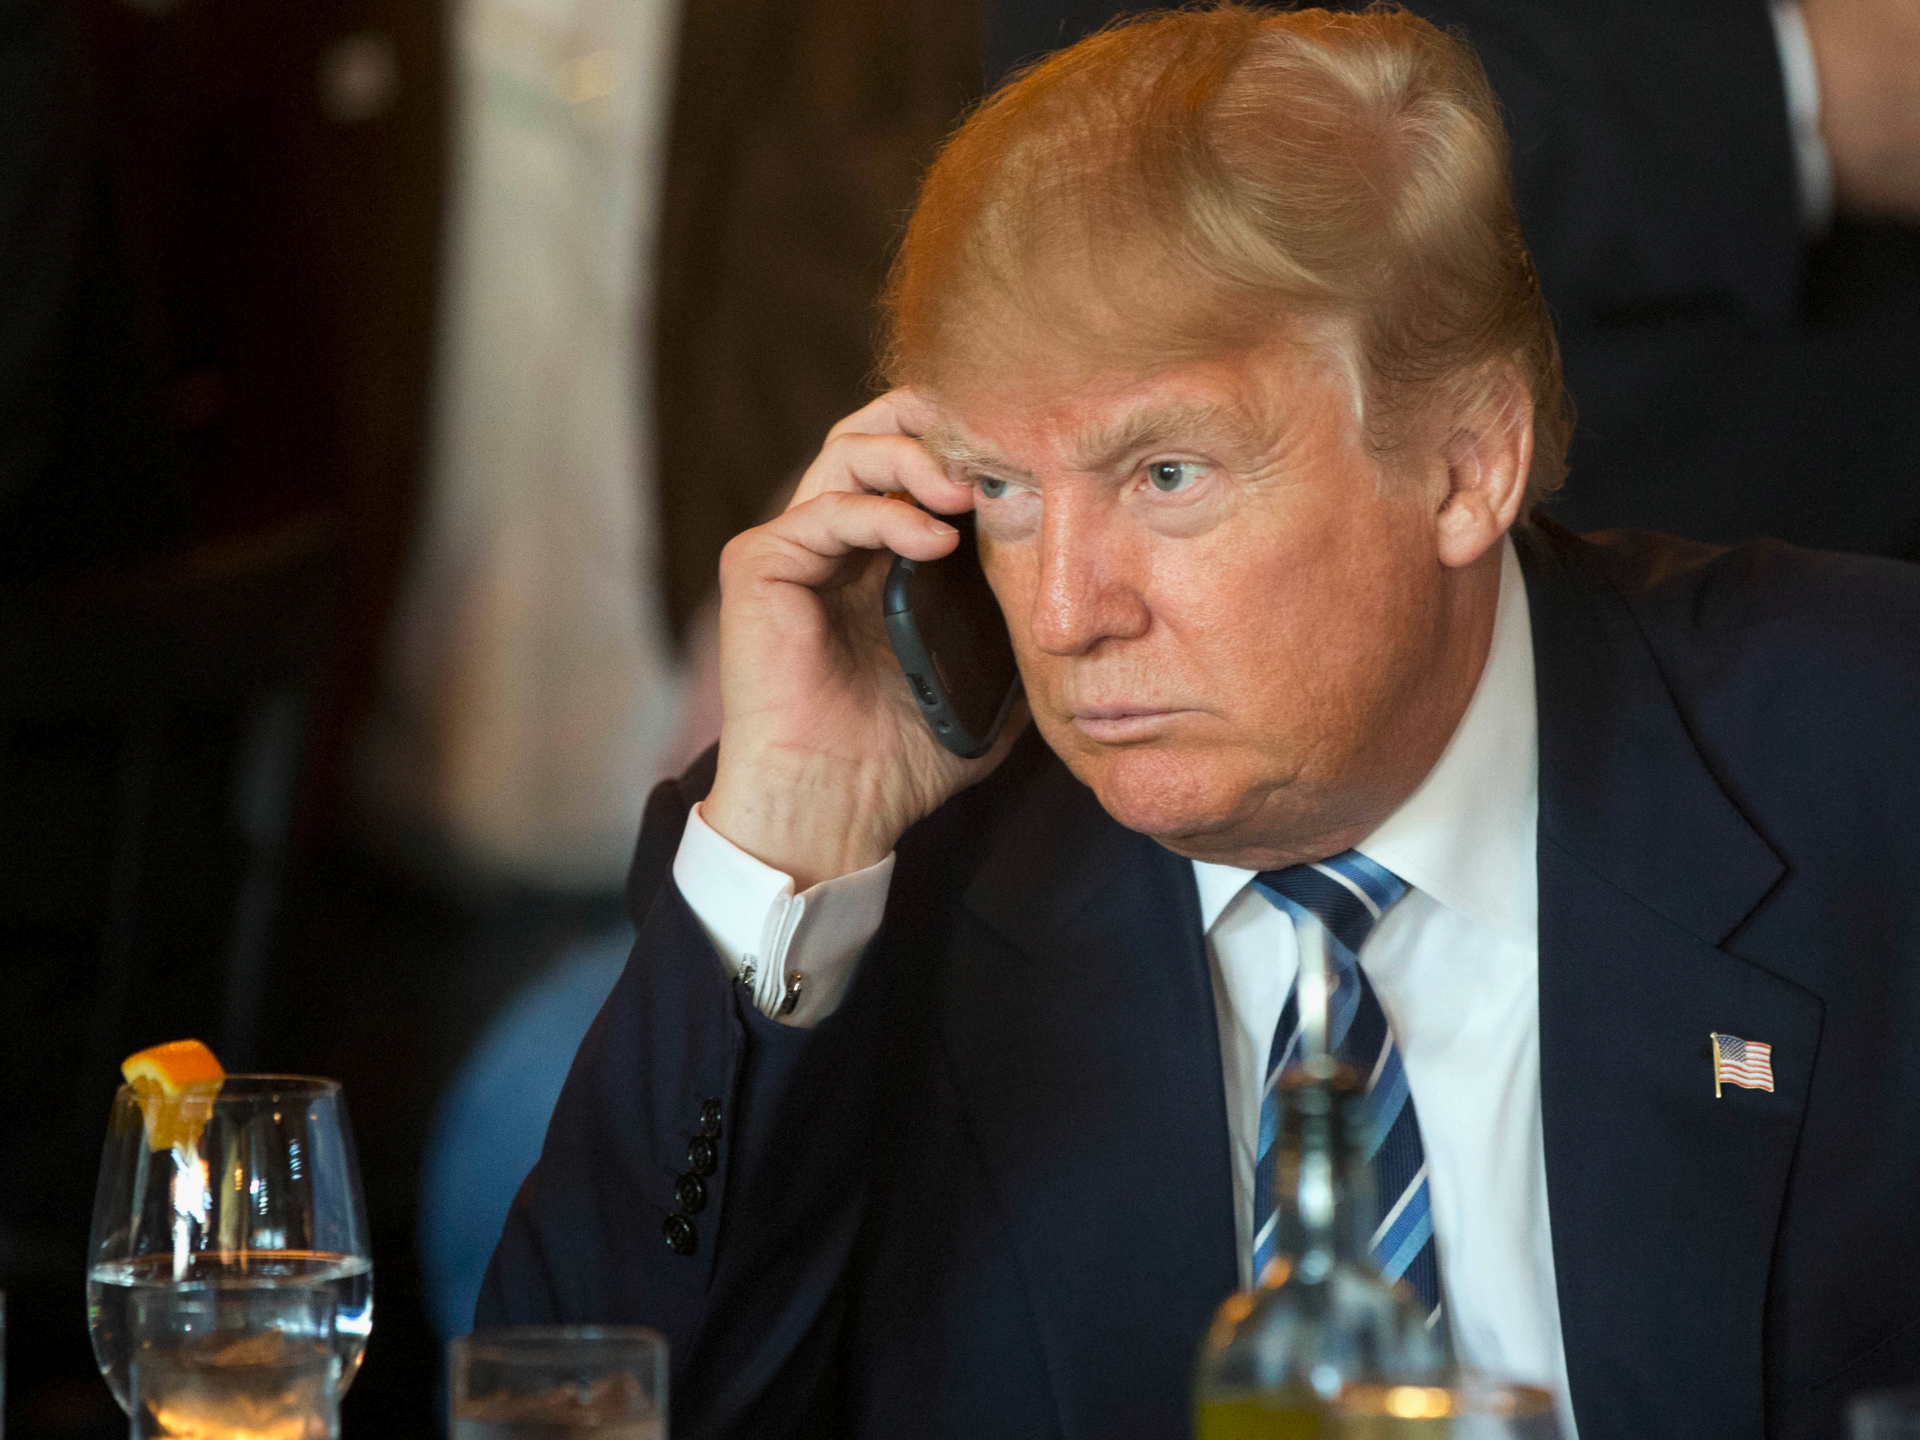 Donald Trump skrytykował projekt nowego iPhone'a 11. A Schwarzenegger pochwalił